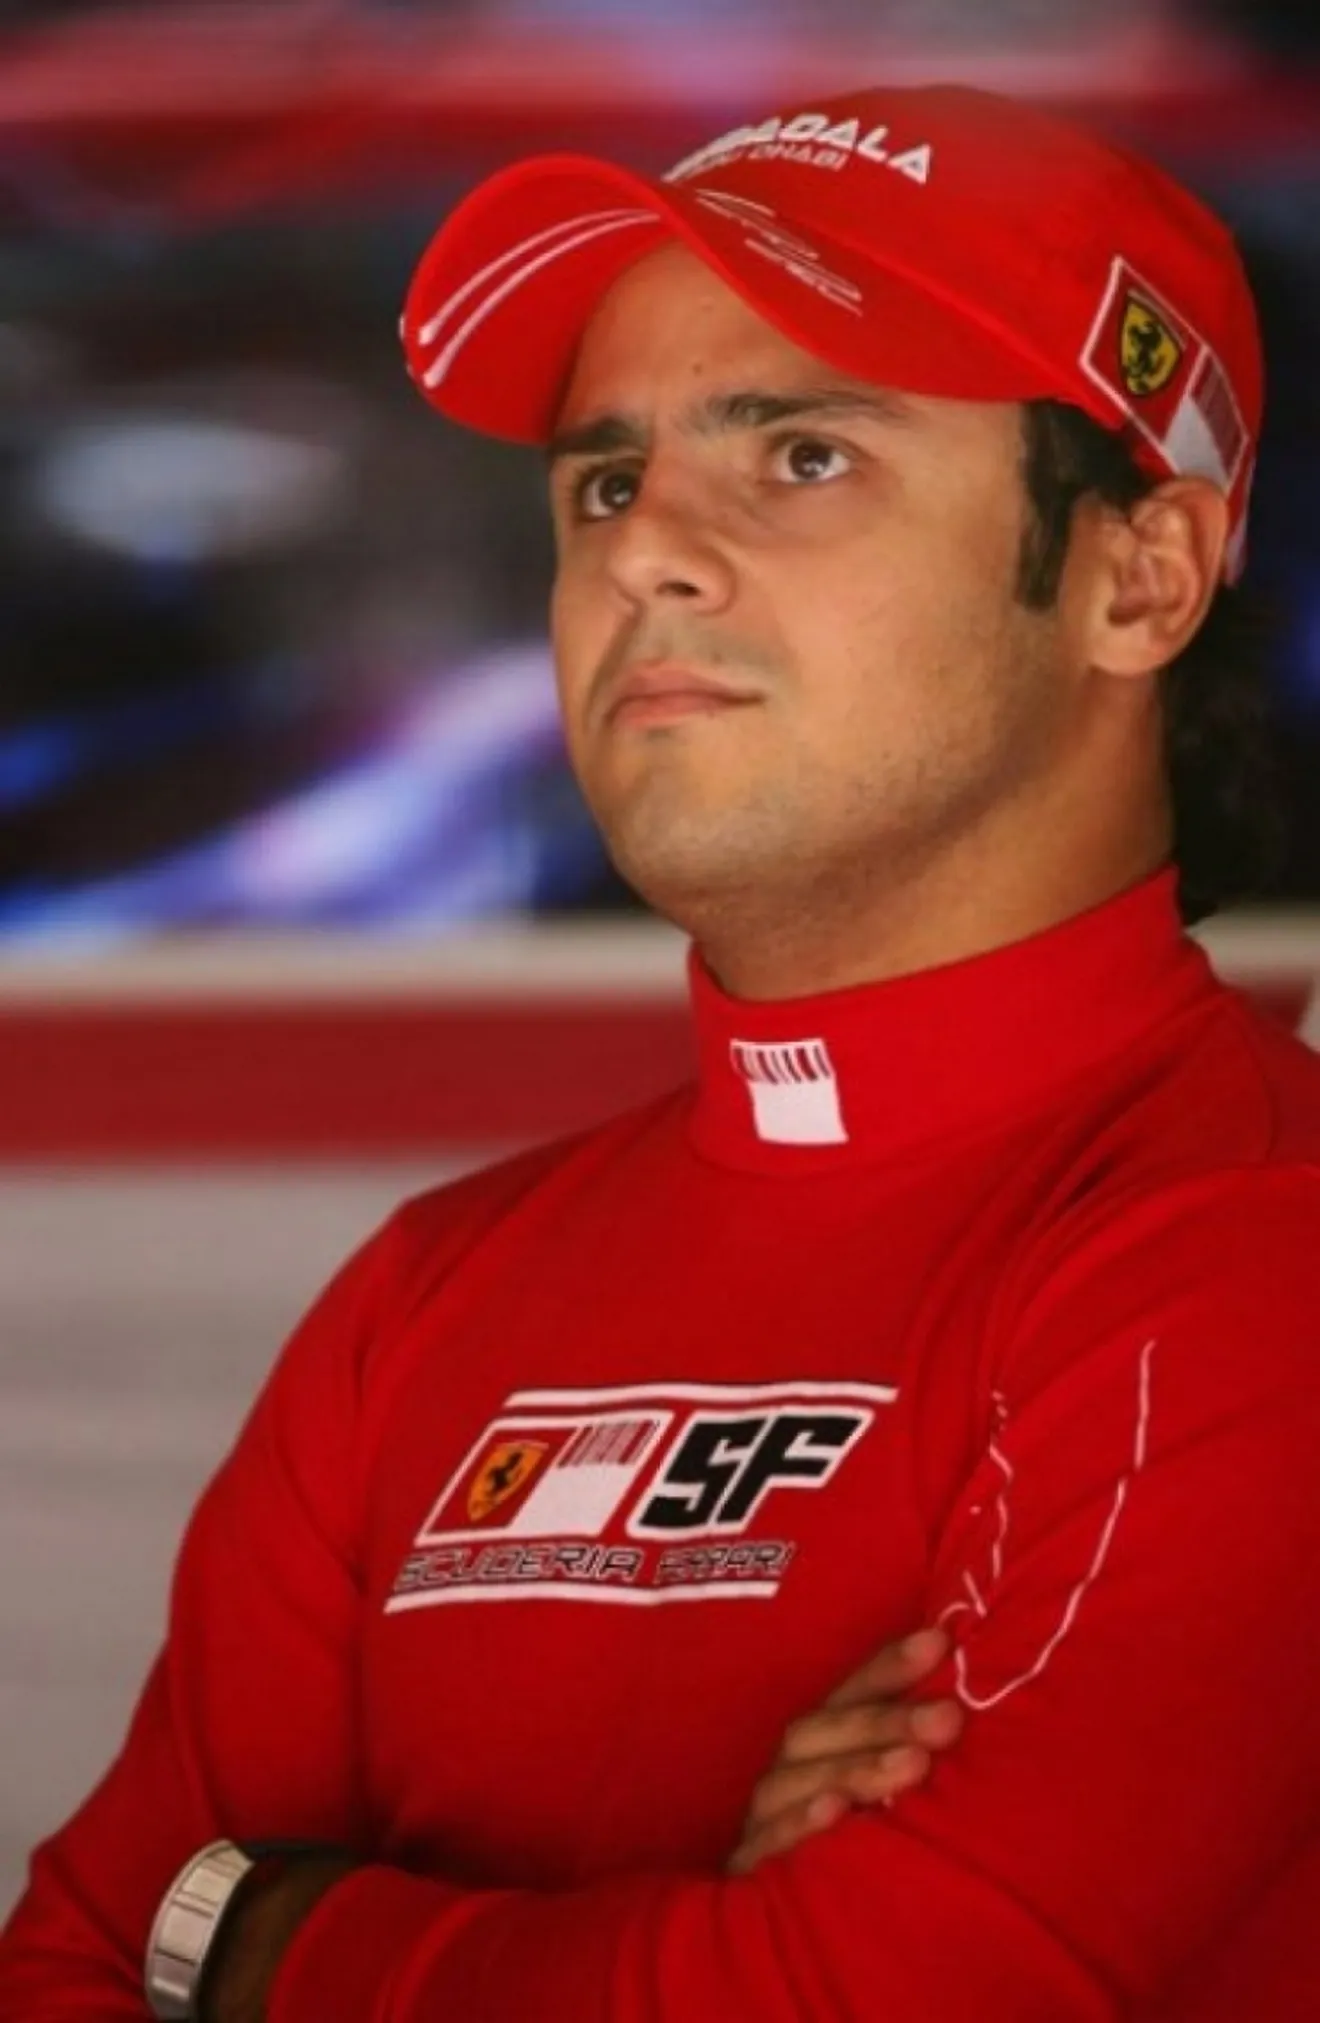 También Massa quiere hablar con Alonso tras la colisión de Silverstone